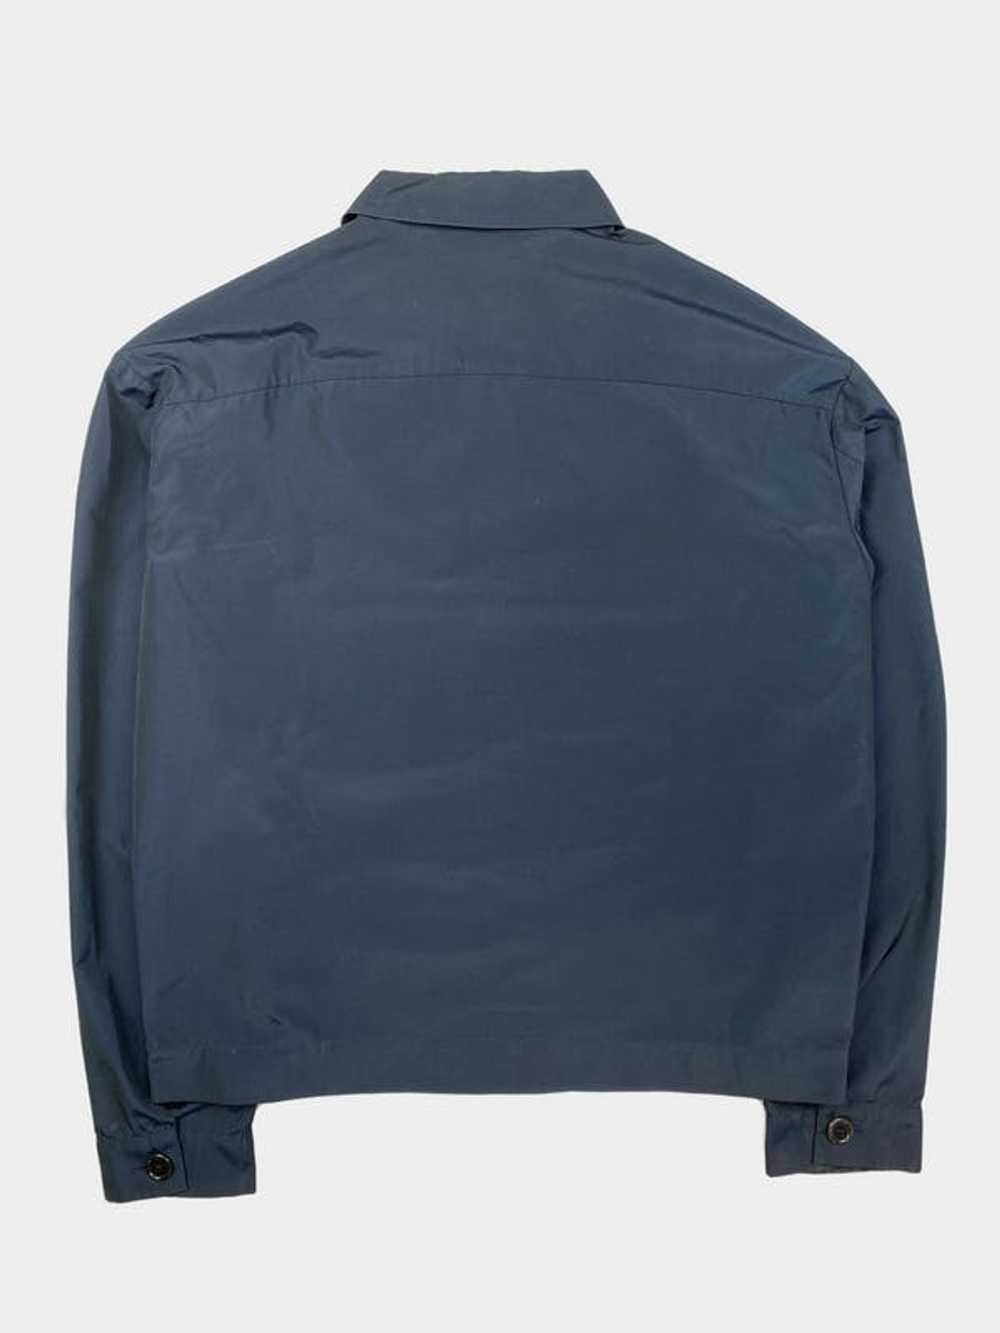 Helmut Lang Blue Pocket Cotton Jacket - image 2